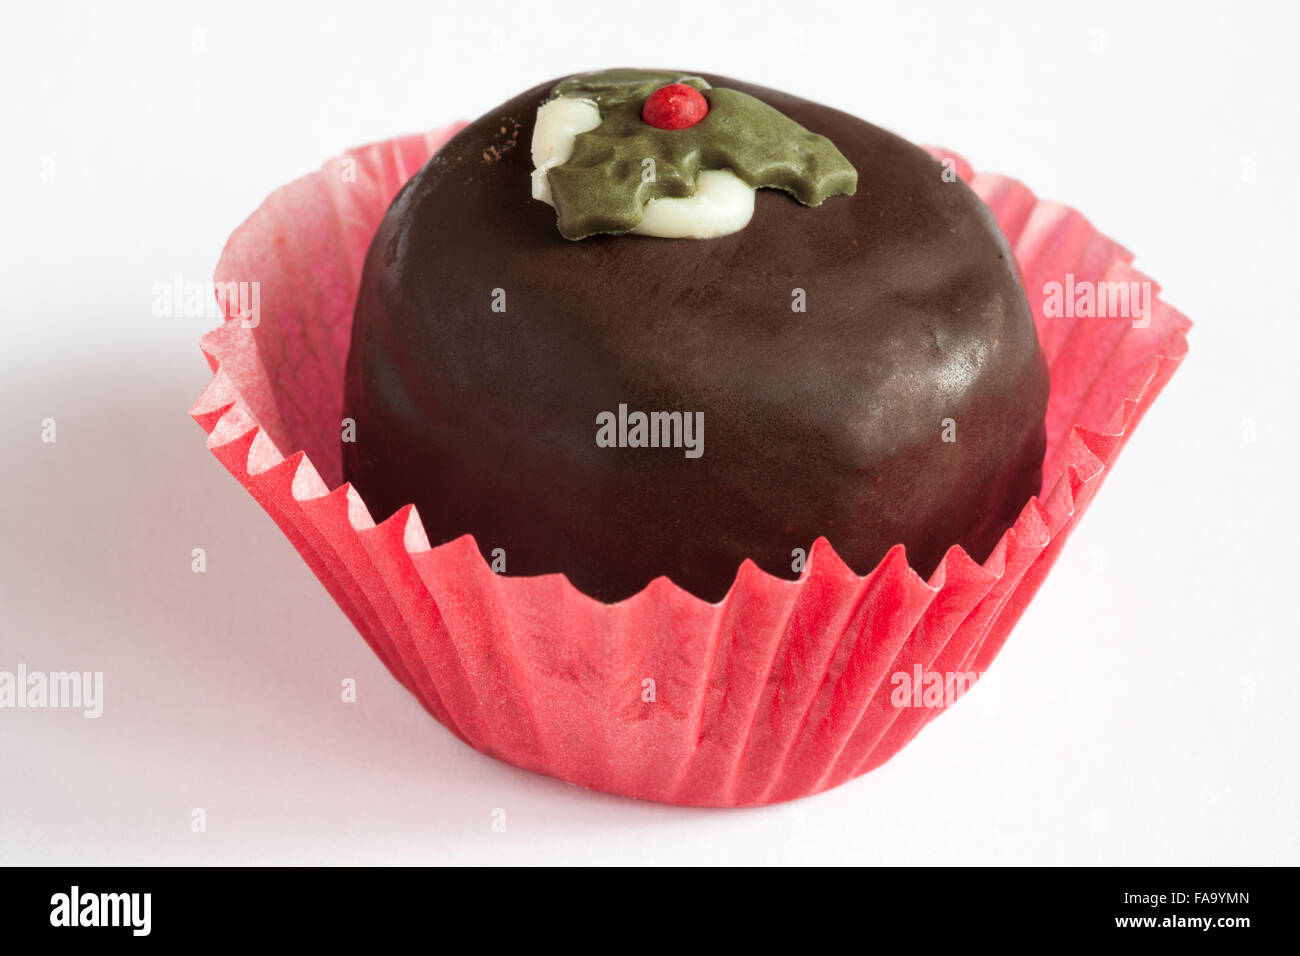 Christmas pudding chocolate truffle cake isolated on white background Stock Photo